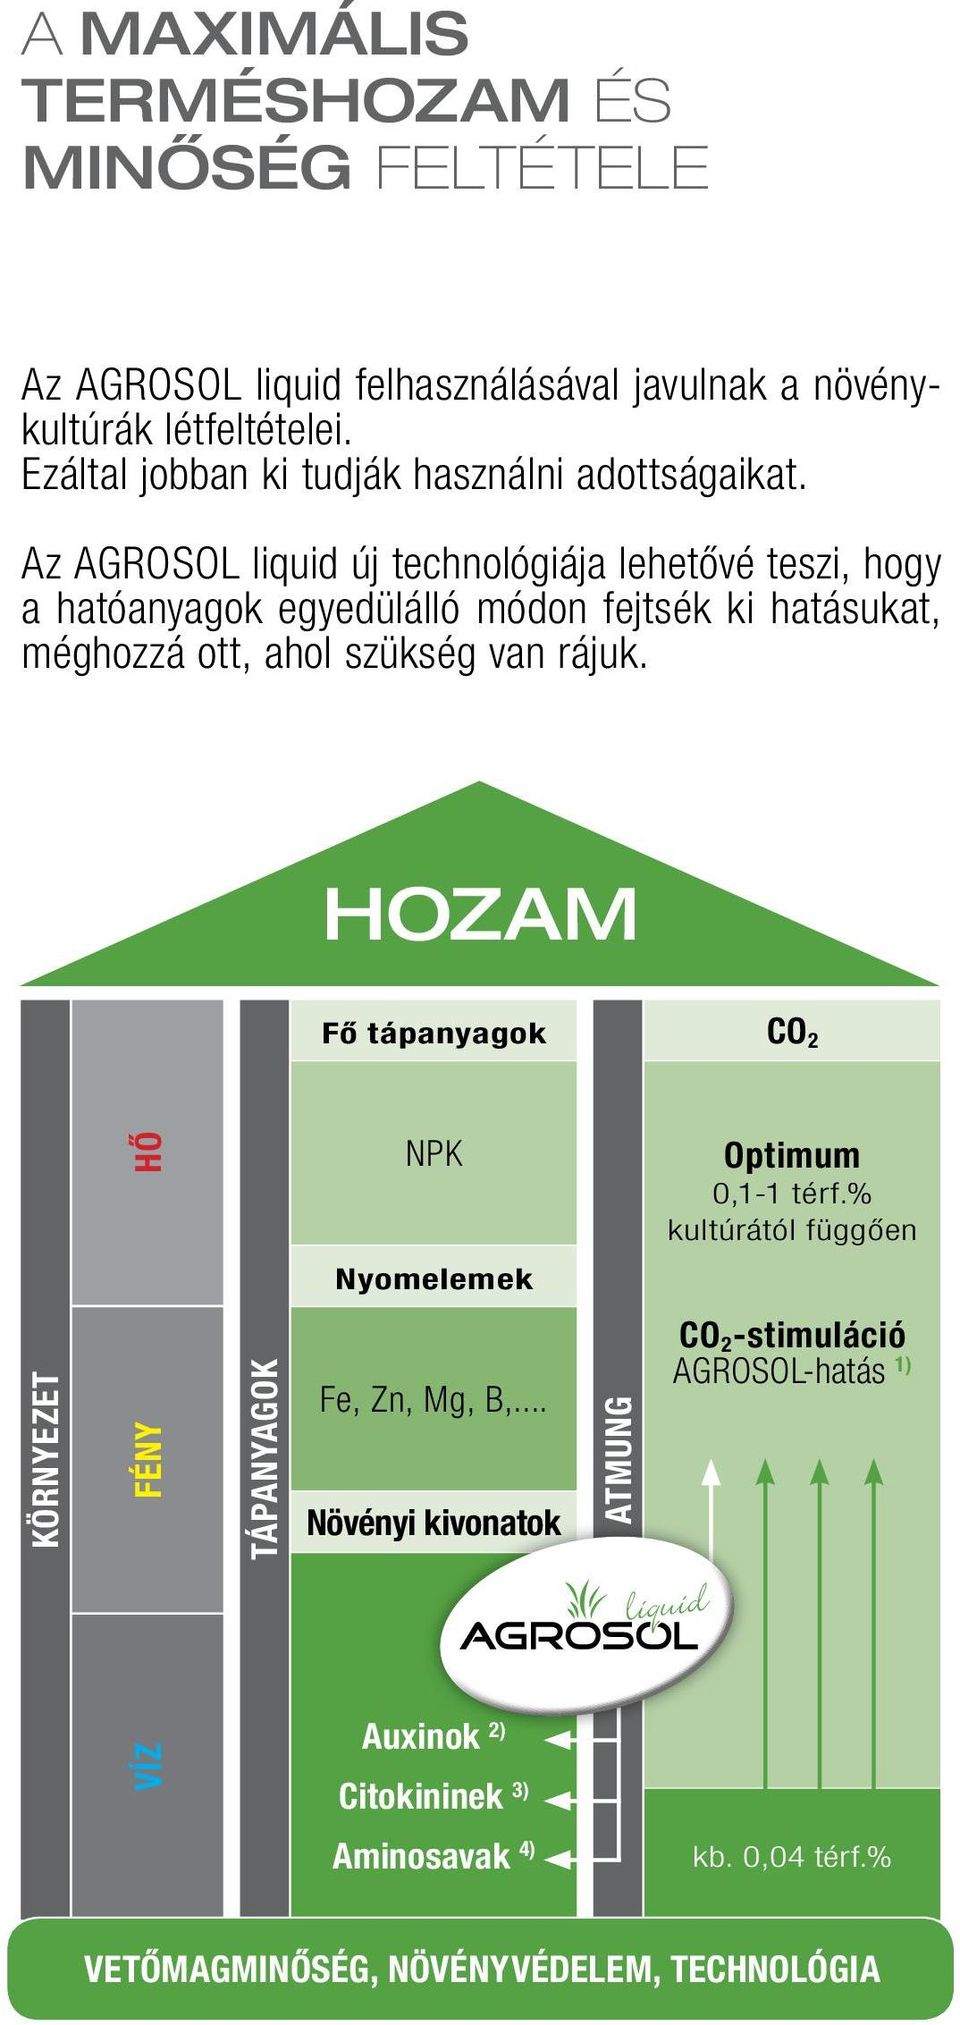 Az AGROSOL liquid új technológiája lehetővé teszi, hogy a hatóanyagok egyedülálló módon fejtsék ki hatásukat, méghozzá ott, ahol szükség van rájuk.